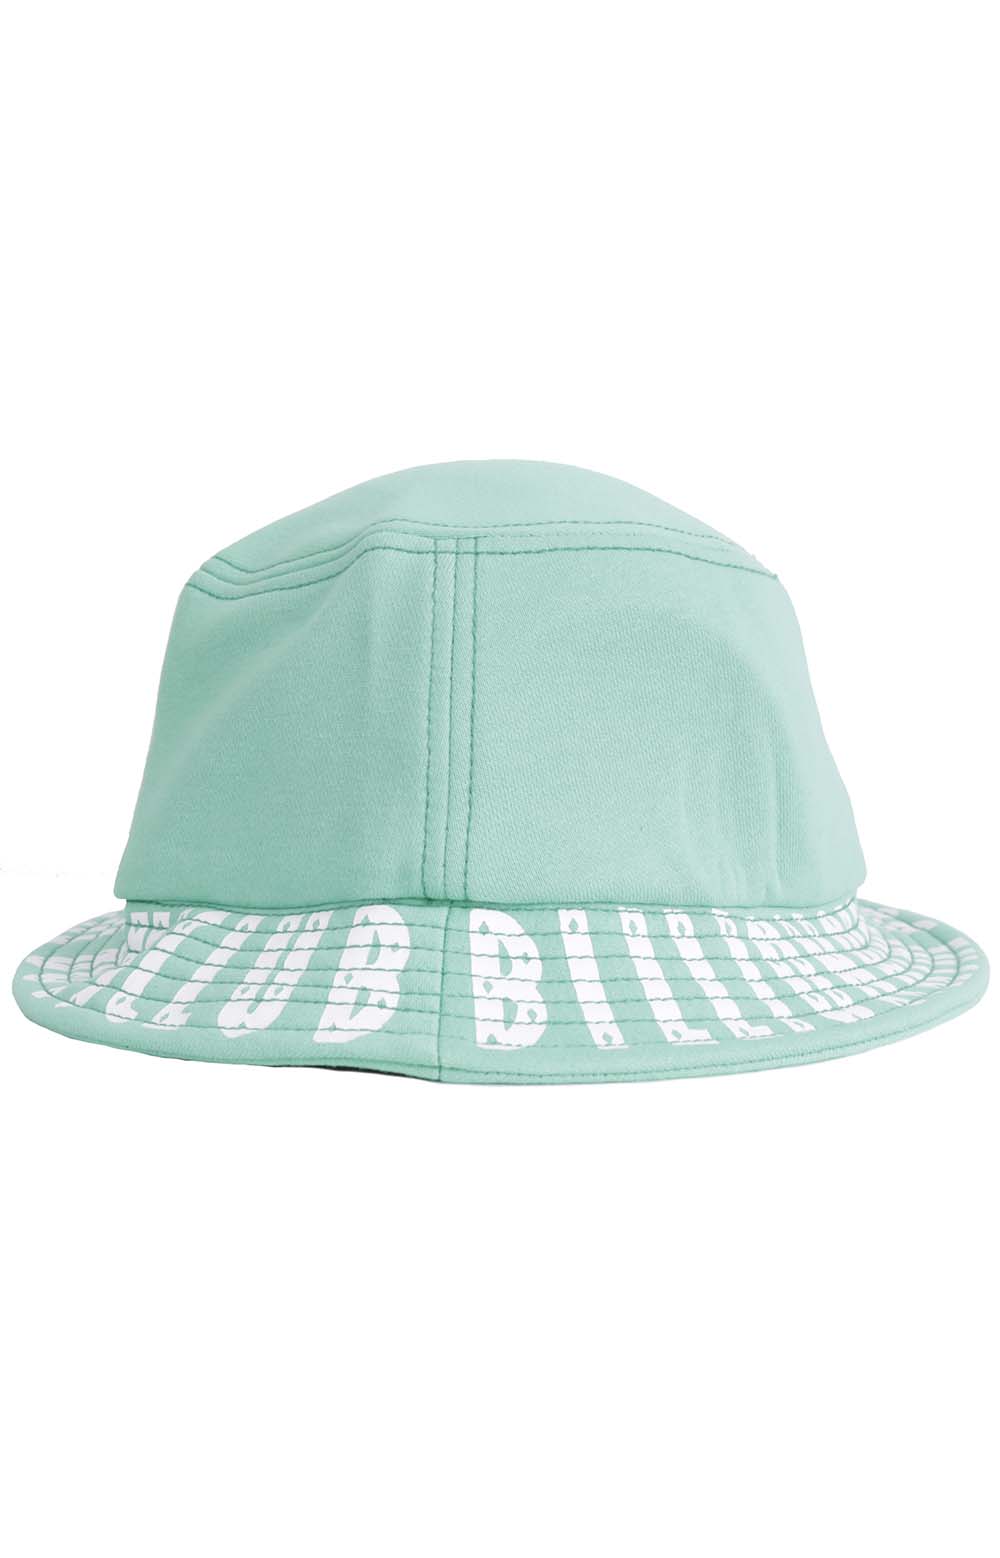 BB Satelitte Bucket Hat - Gumdrop Gree